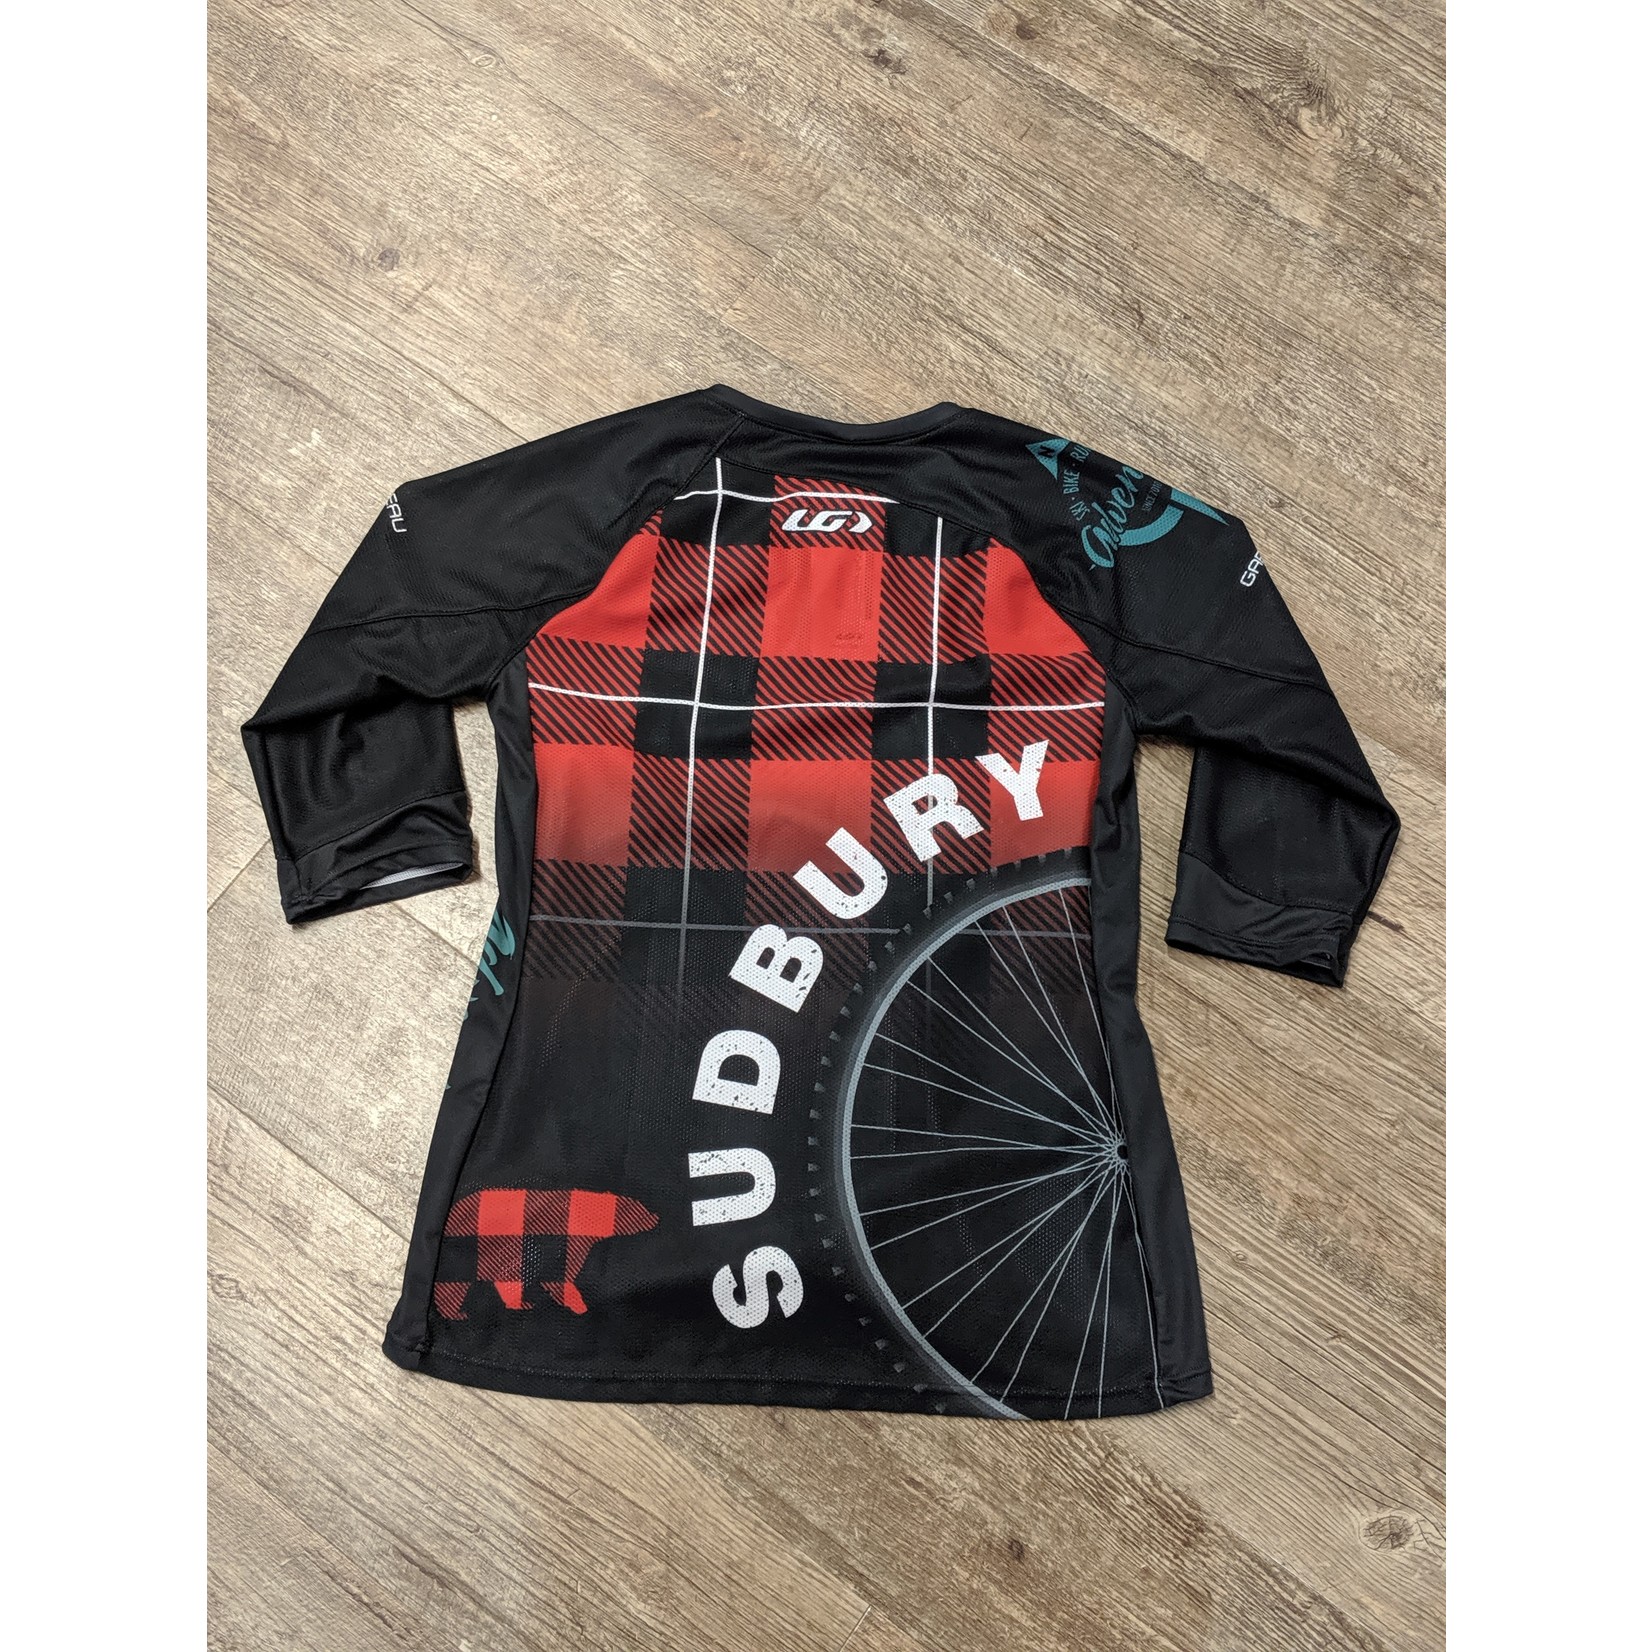 Sudbury Jersey 2019 -Men's  MTB 3/4 Sleeve